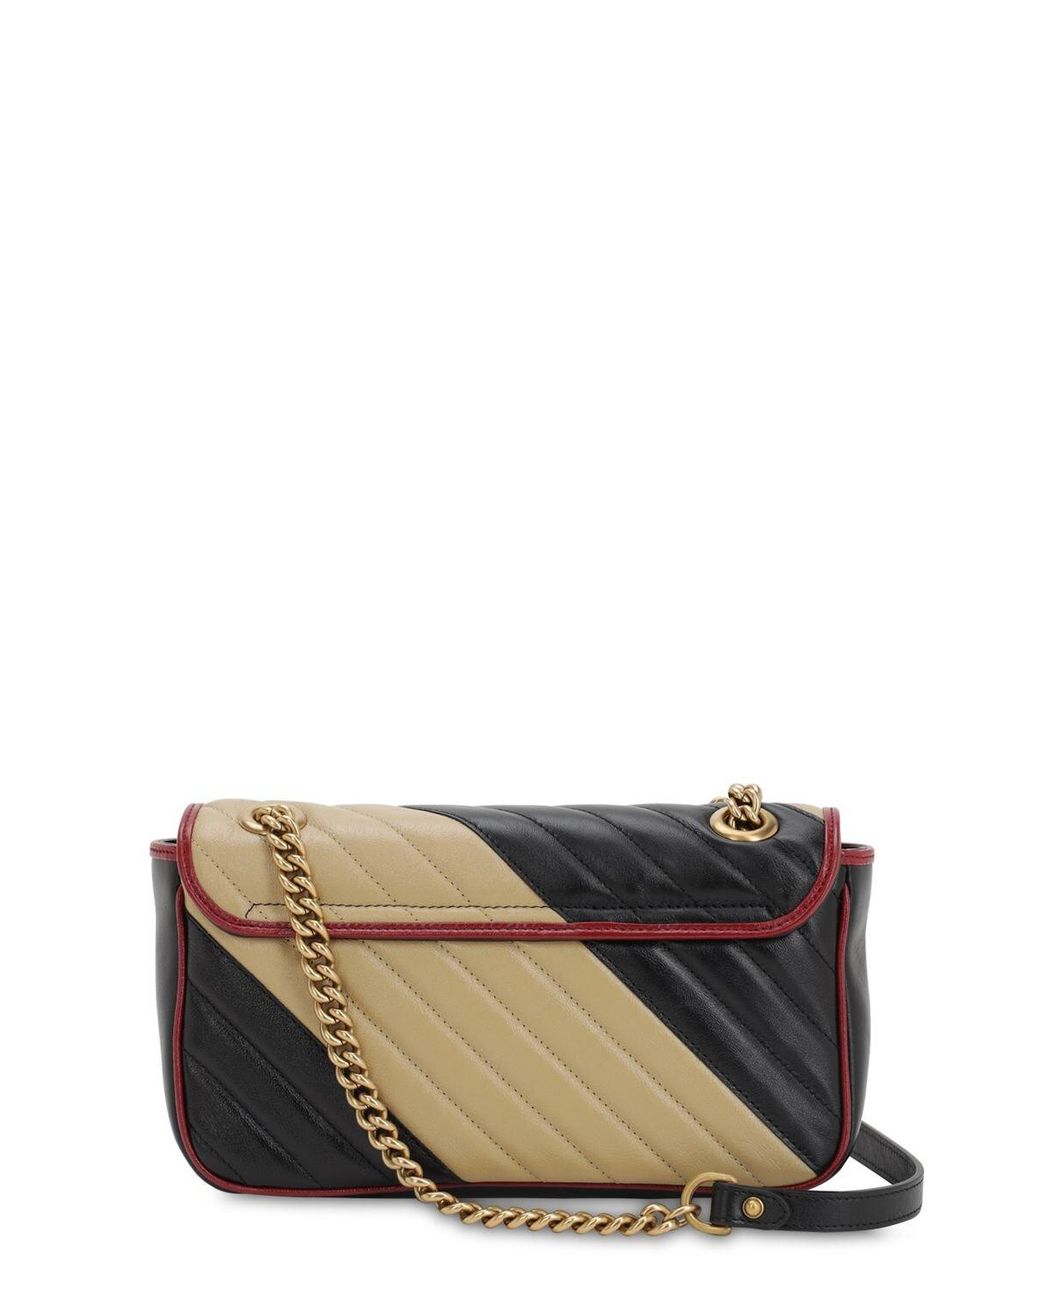 Black GG Marmont 2.0 mini matelassé-leather handbag